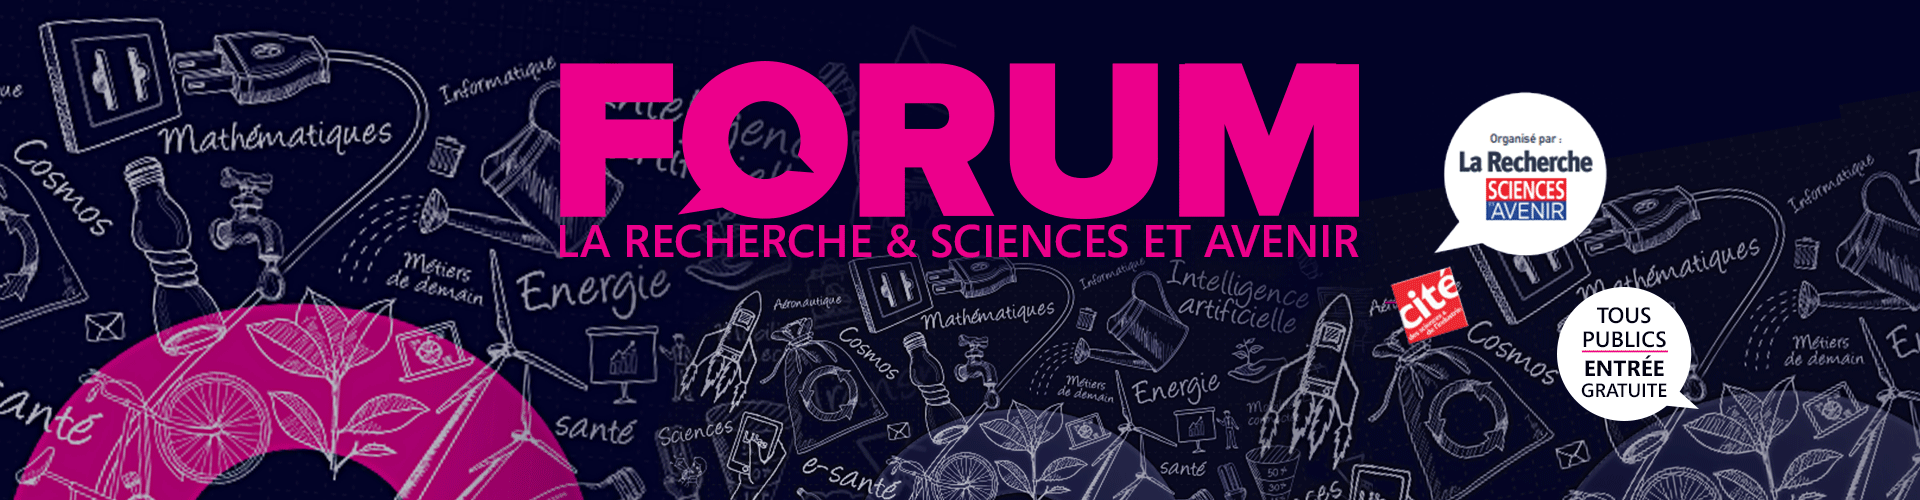 Forum La recherche Sciences et avenir